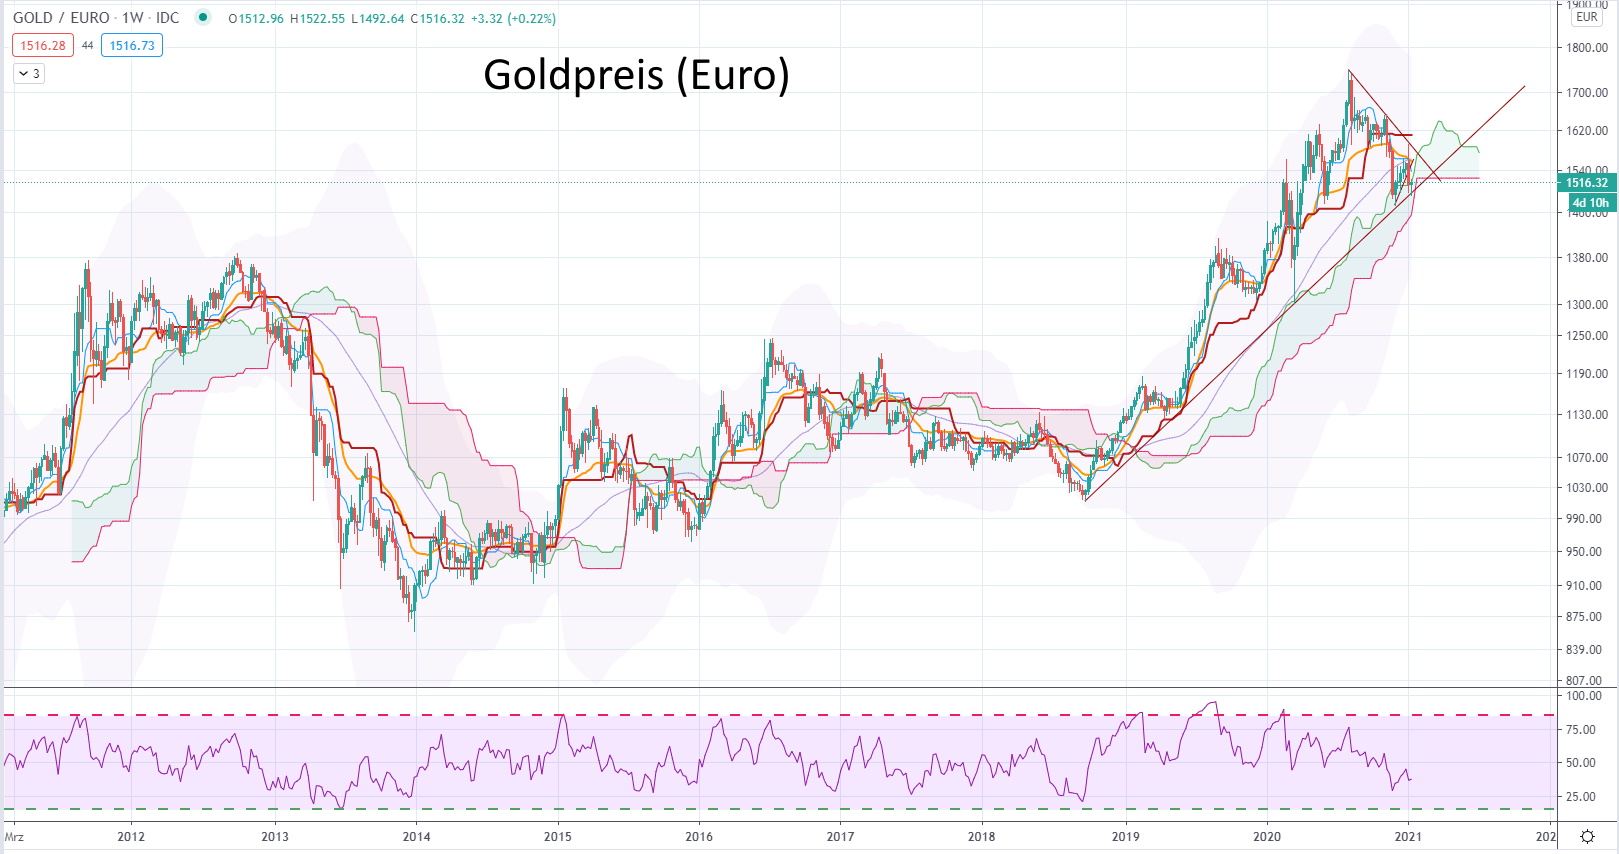 Gold oder Bitcoin - welche Anlageklasse ist besser? - Goldpreis in Euro